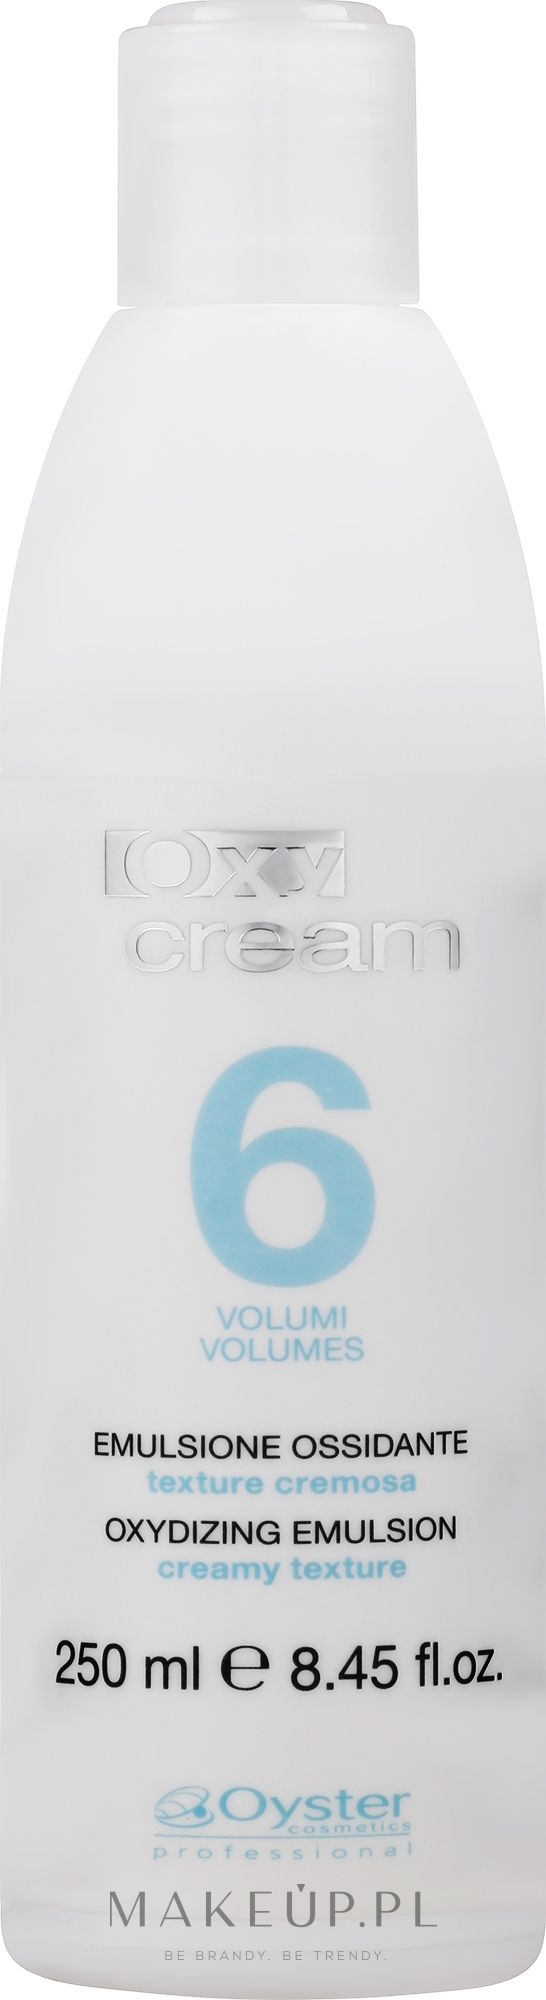 Utleniacz 6 vol. 1,8% - Oyster Cosmetics Oxy Cream Oxydant — Zdjęcie 250 ml